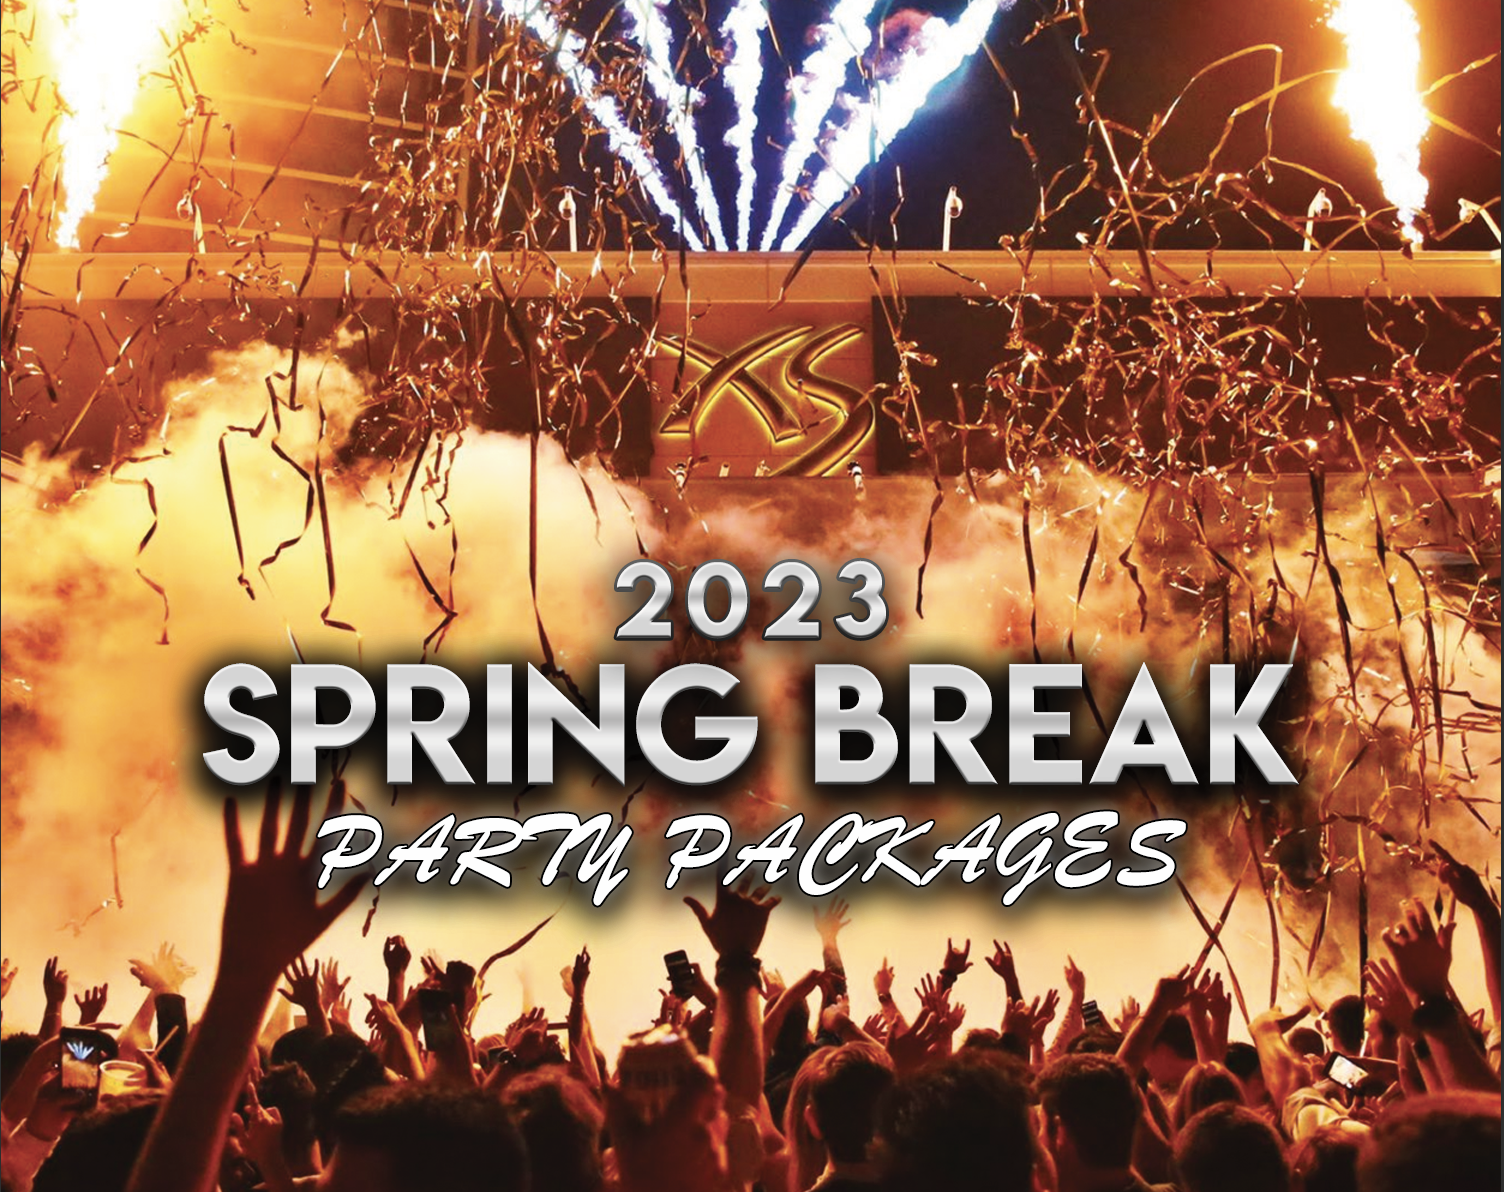 Spring Break in Las Vegas: <br>The Ultimate Spring Break Party Package